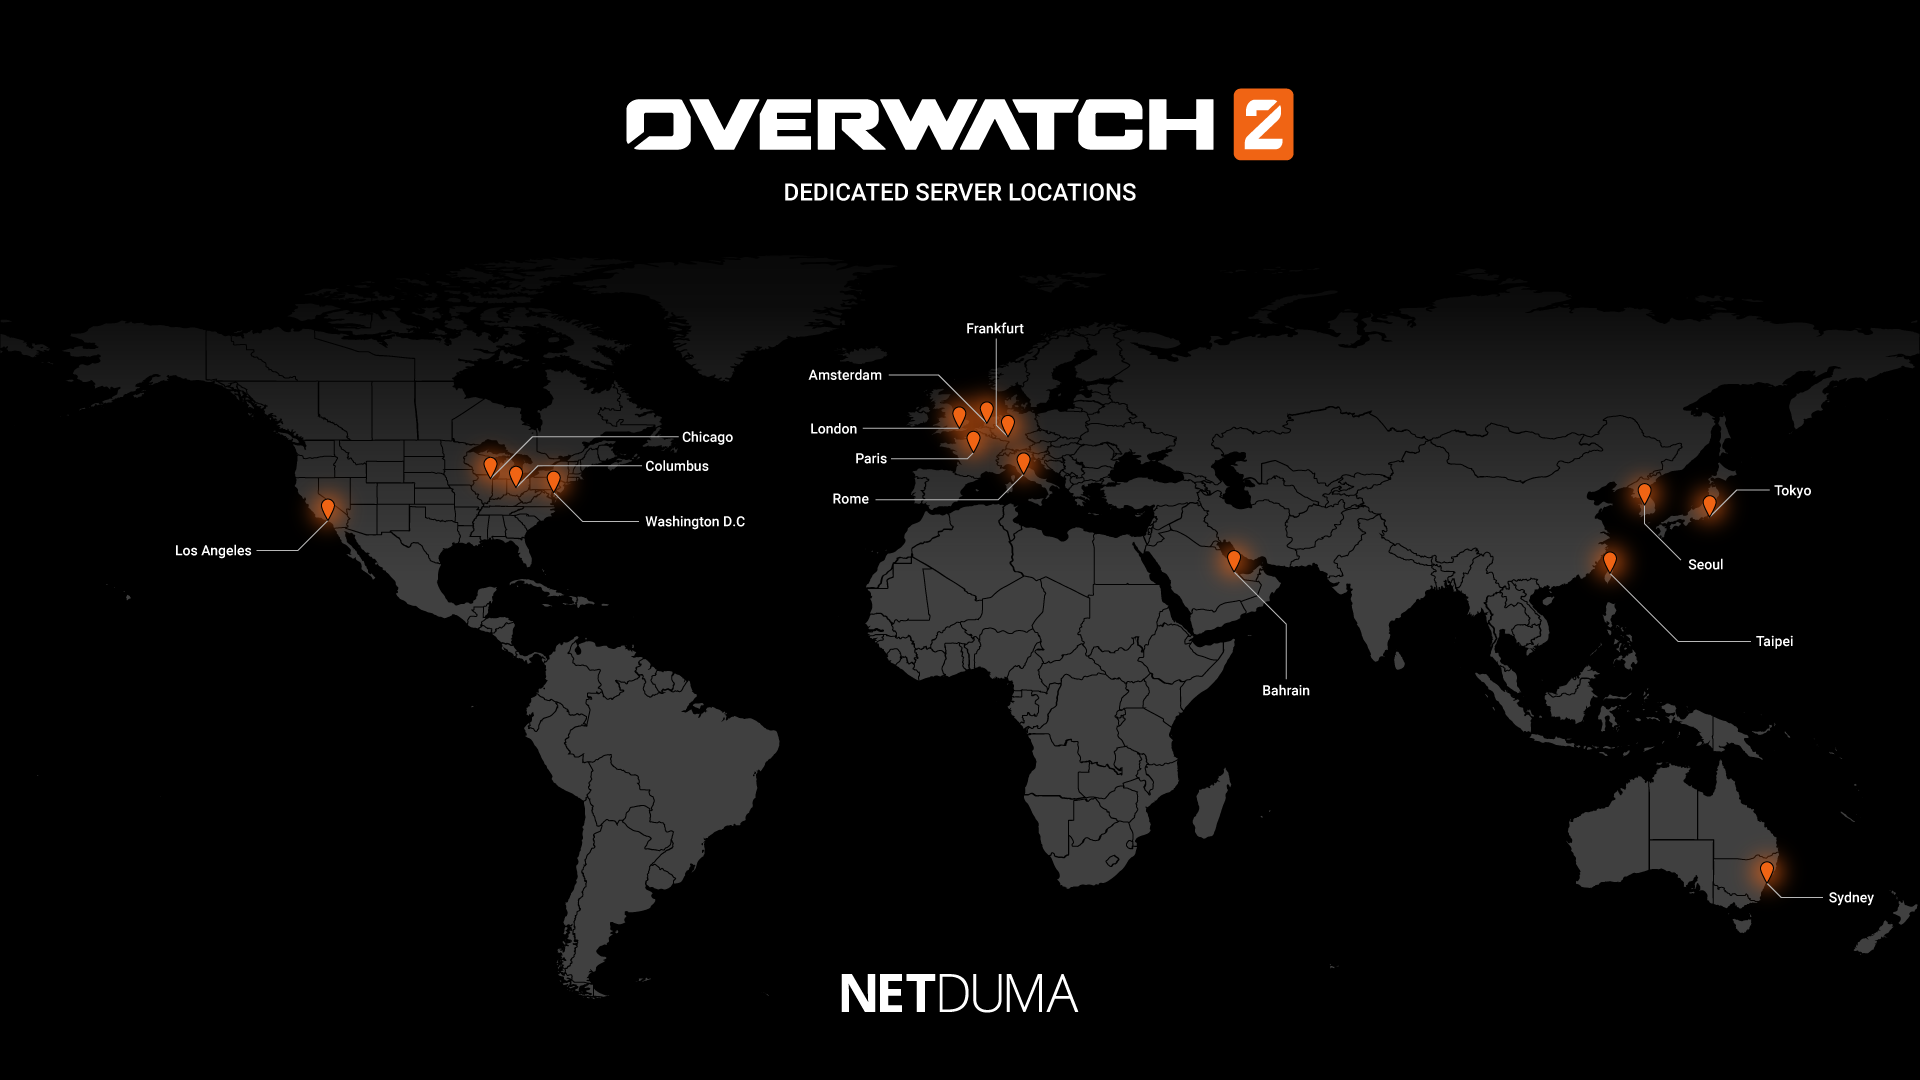 Donau koolhydraat Disciplinair Overwatch 2 Server Locations | Netduma